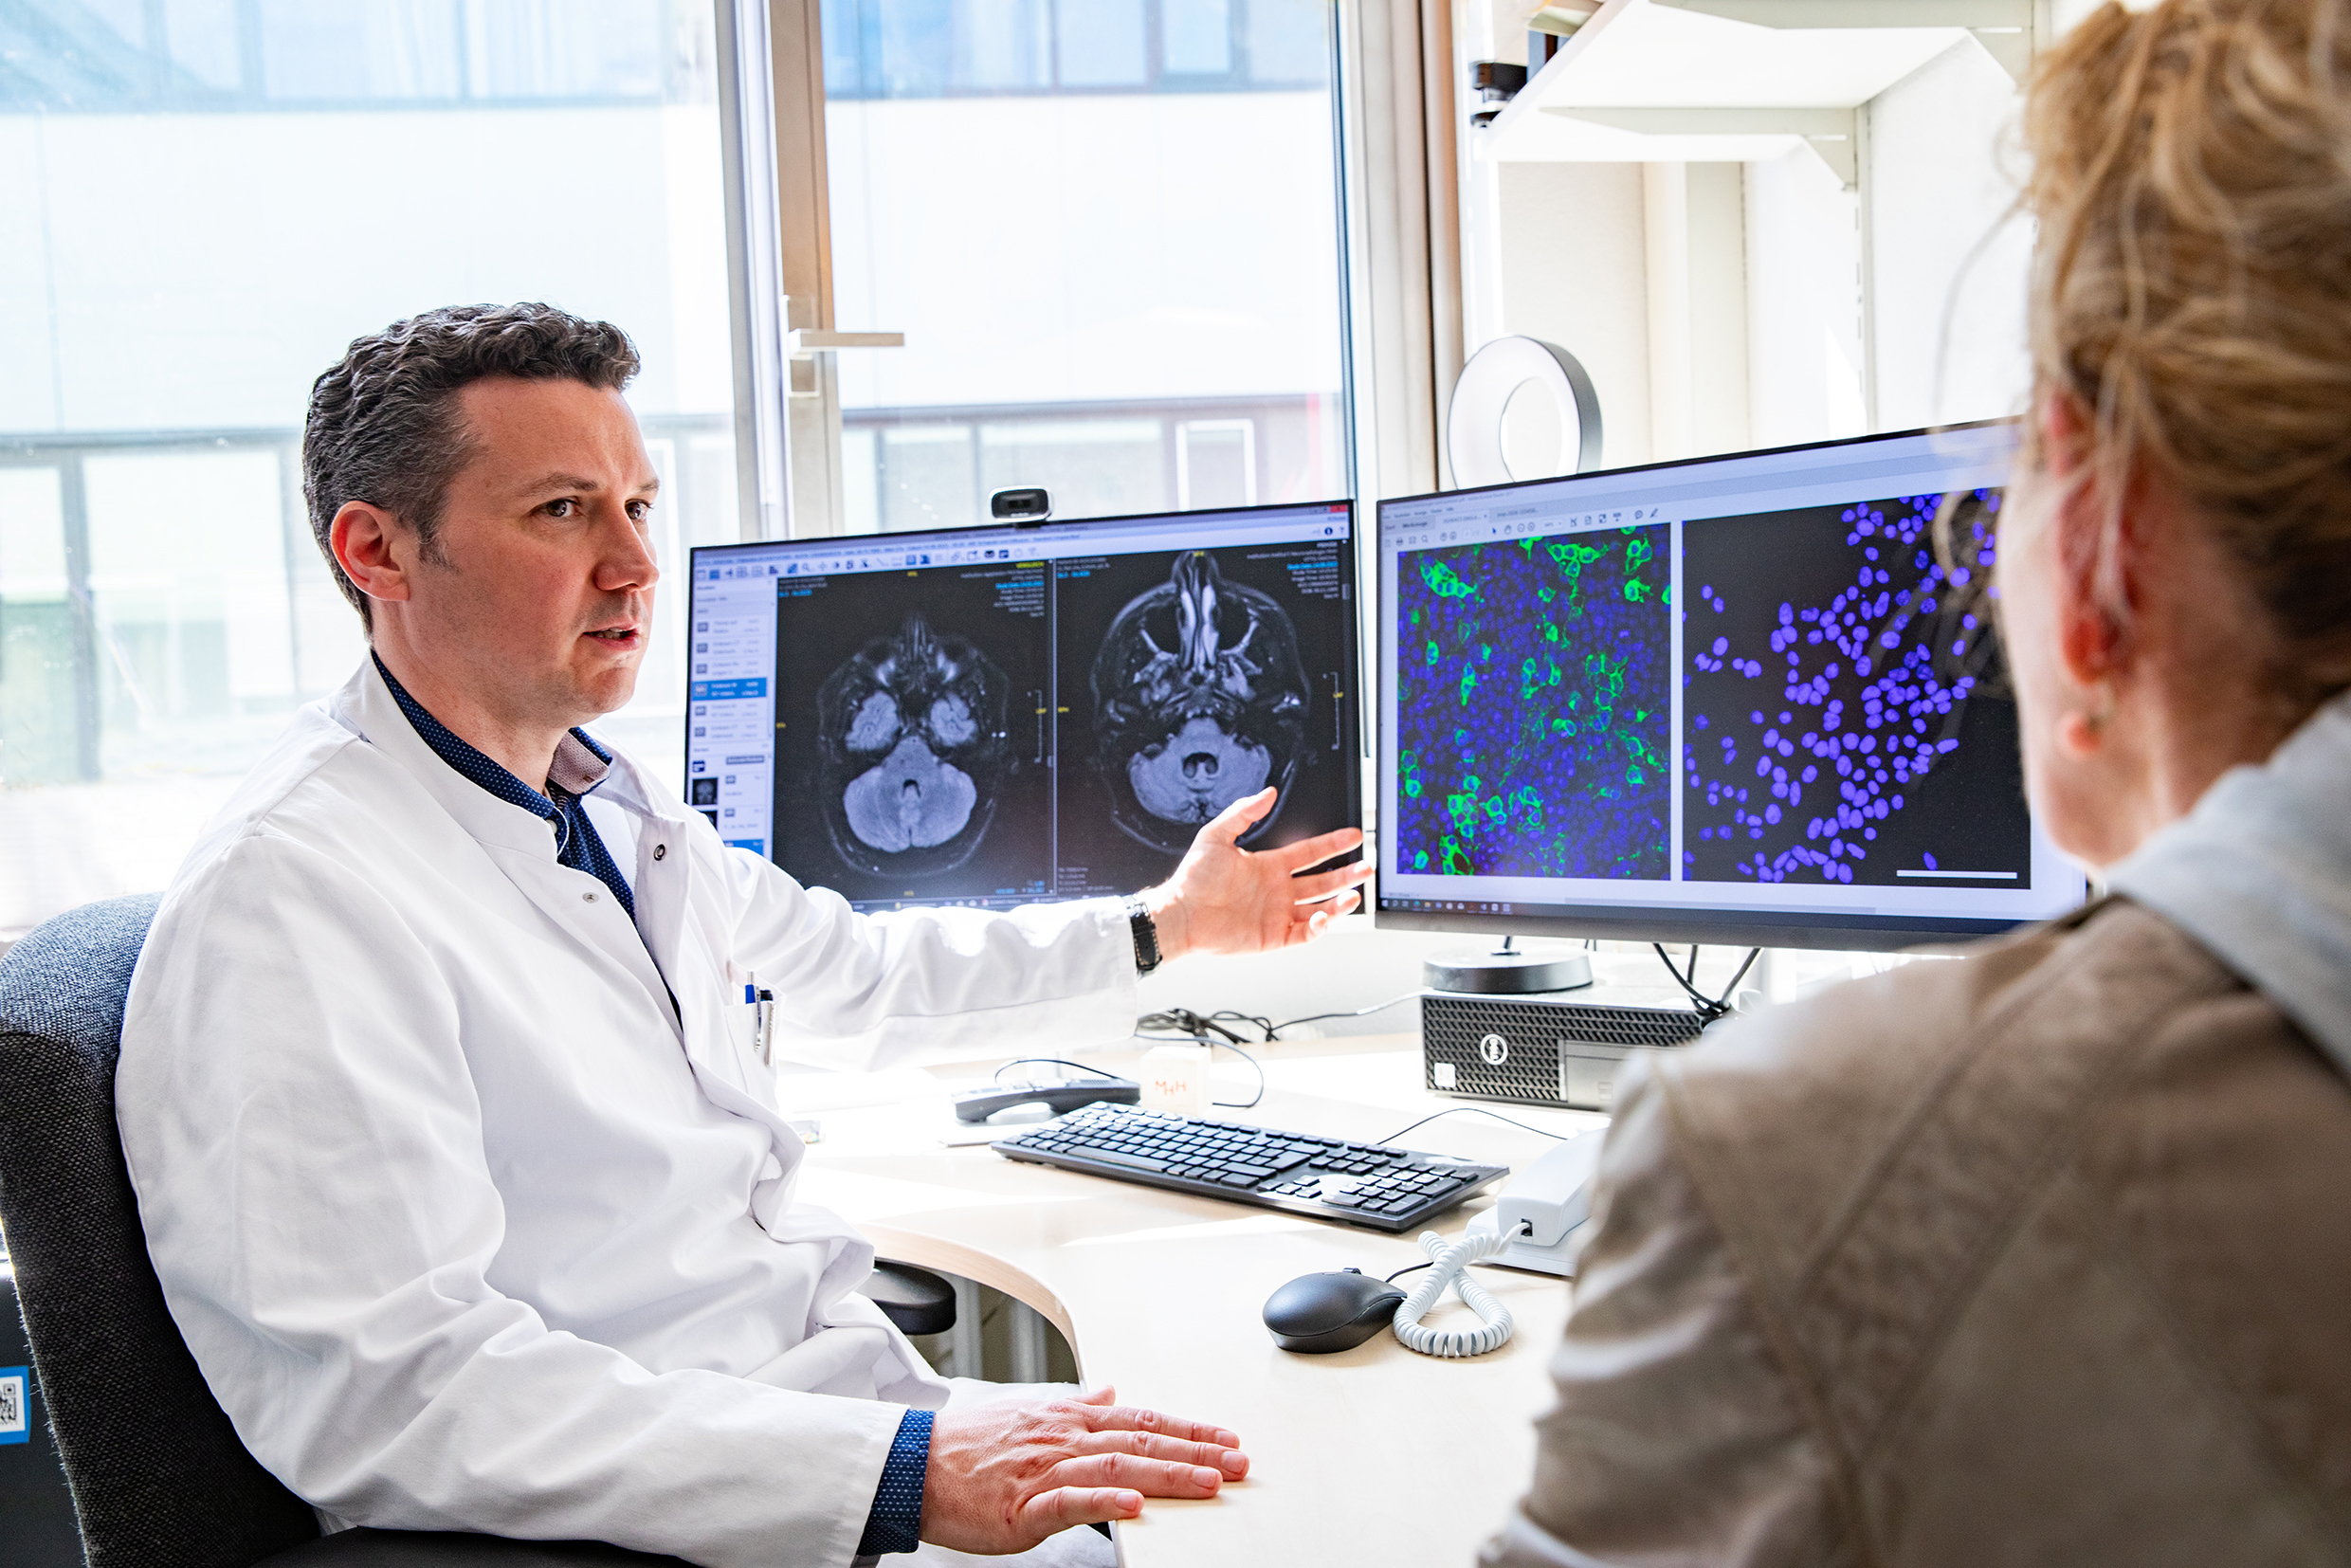 Ein Arzt im weißen Kittel sitzt vor zwei Bildschirmen mit MRT-Aufnahmen des Kleinhirns und fluoreszenzmikroskopischen Bildern von Zellkulturen.